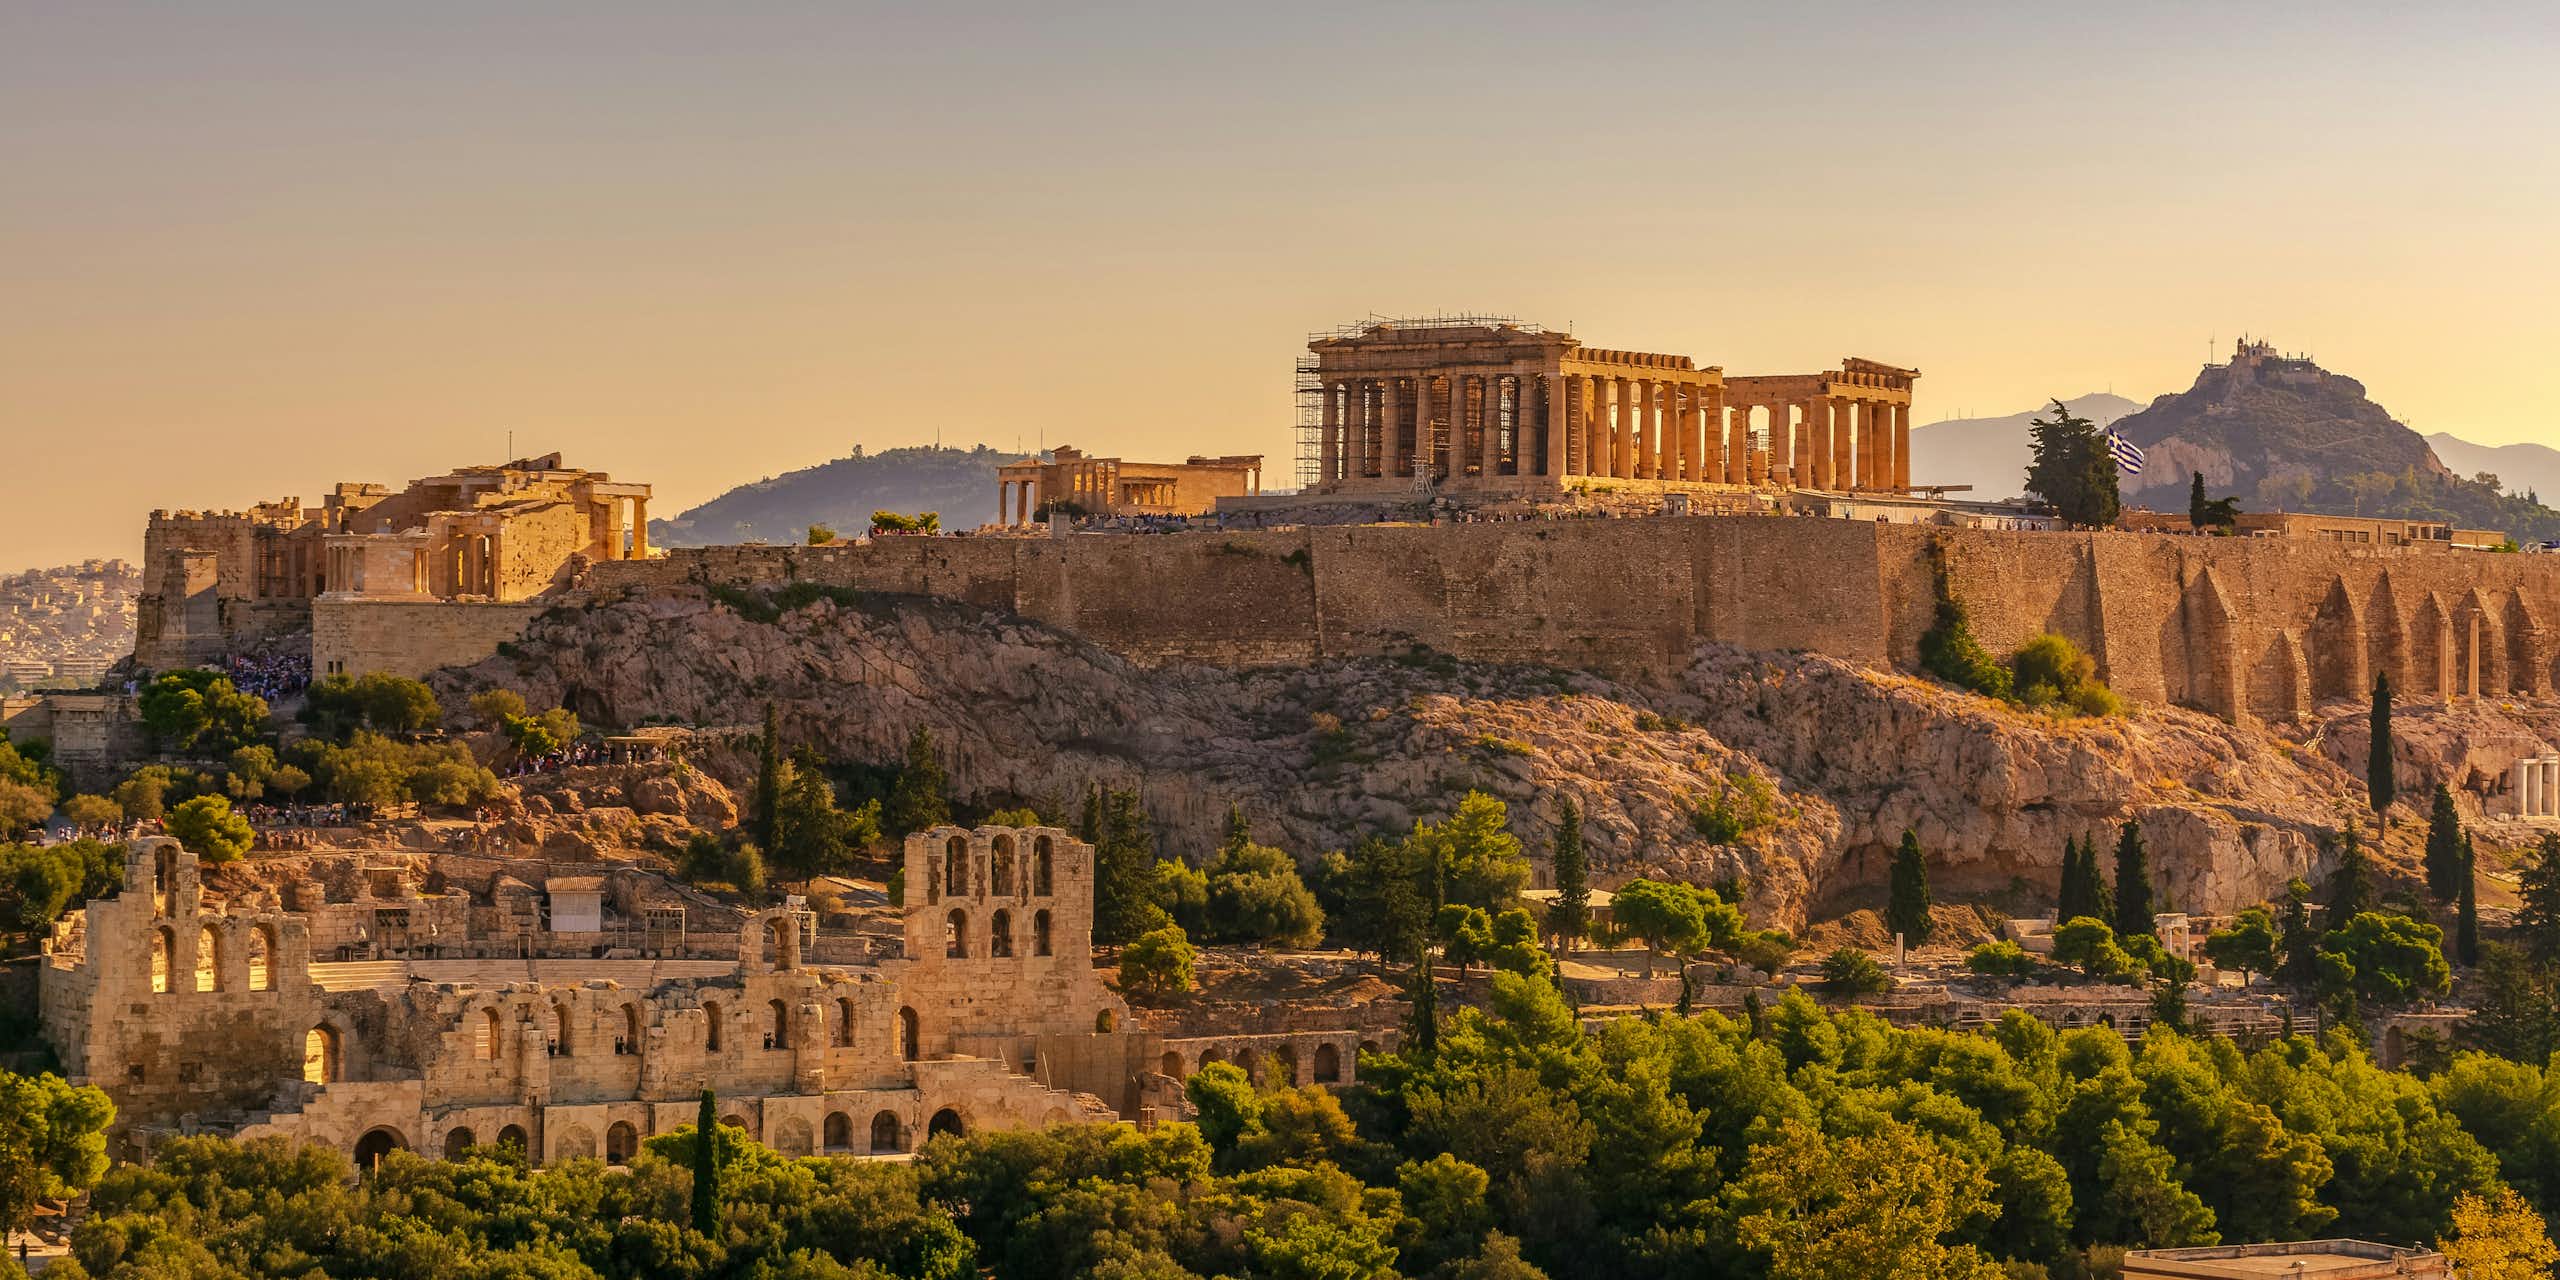 La acrópolis de Atenas con el Partenón.